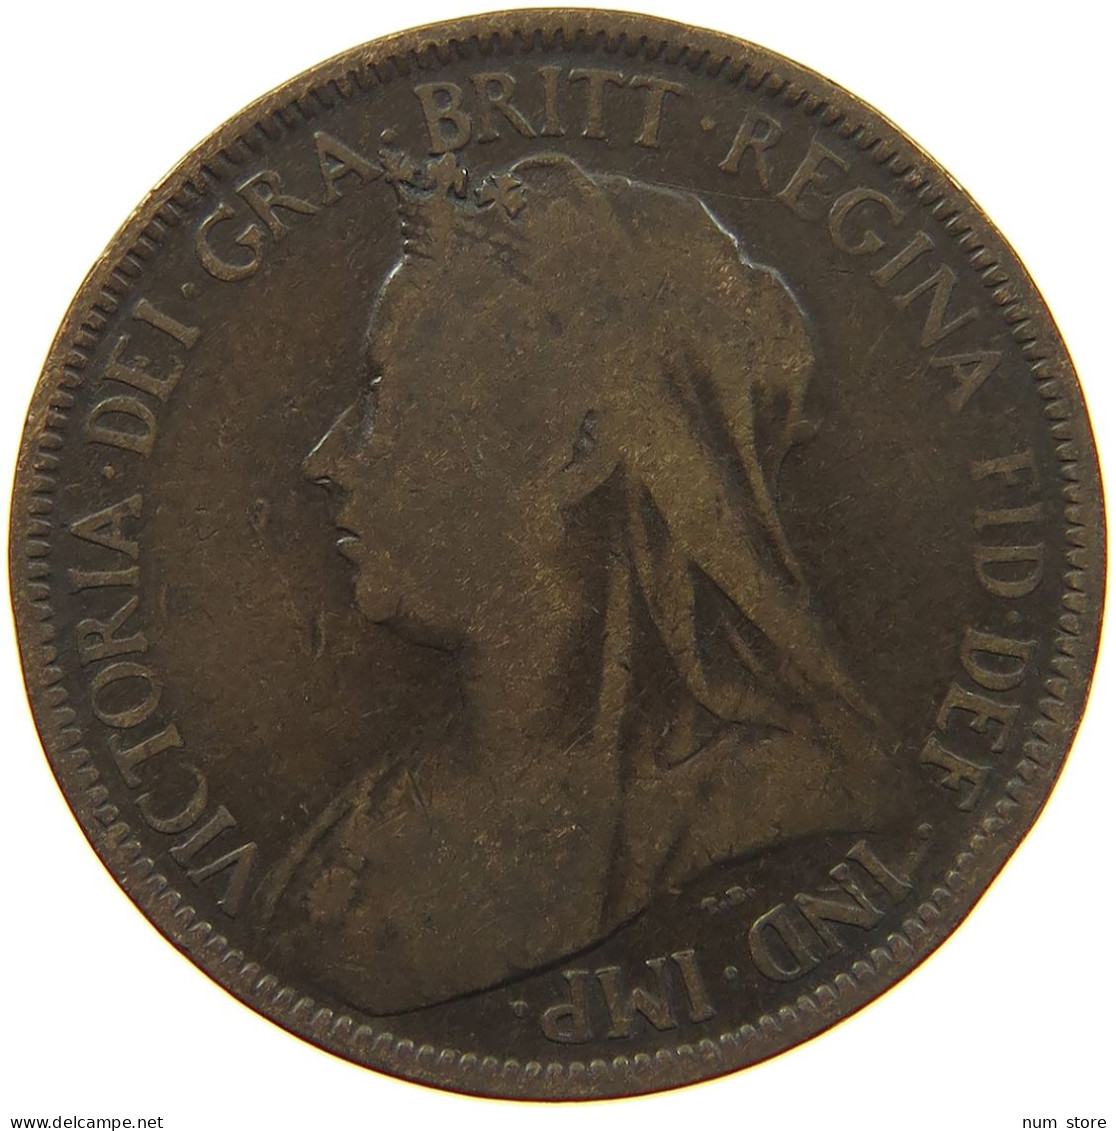 GREAT BRITAIN HALF PENNY 1899 #s001 0277 - C. 1/2 Penny